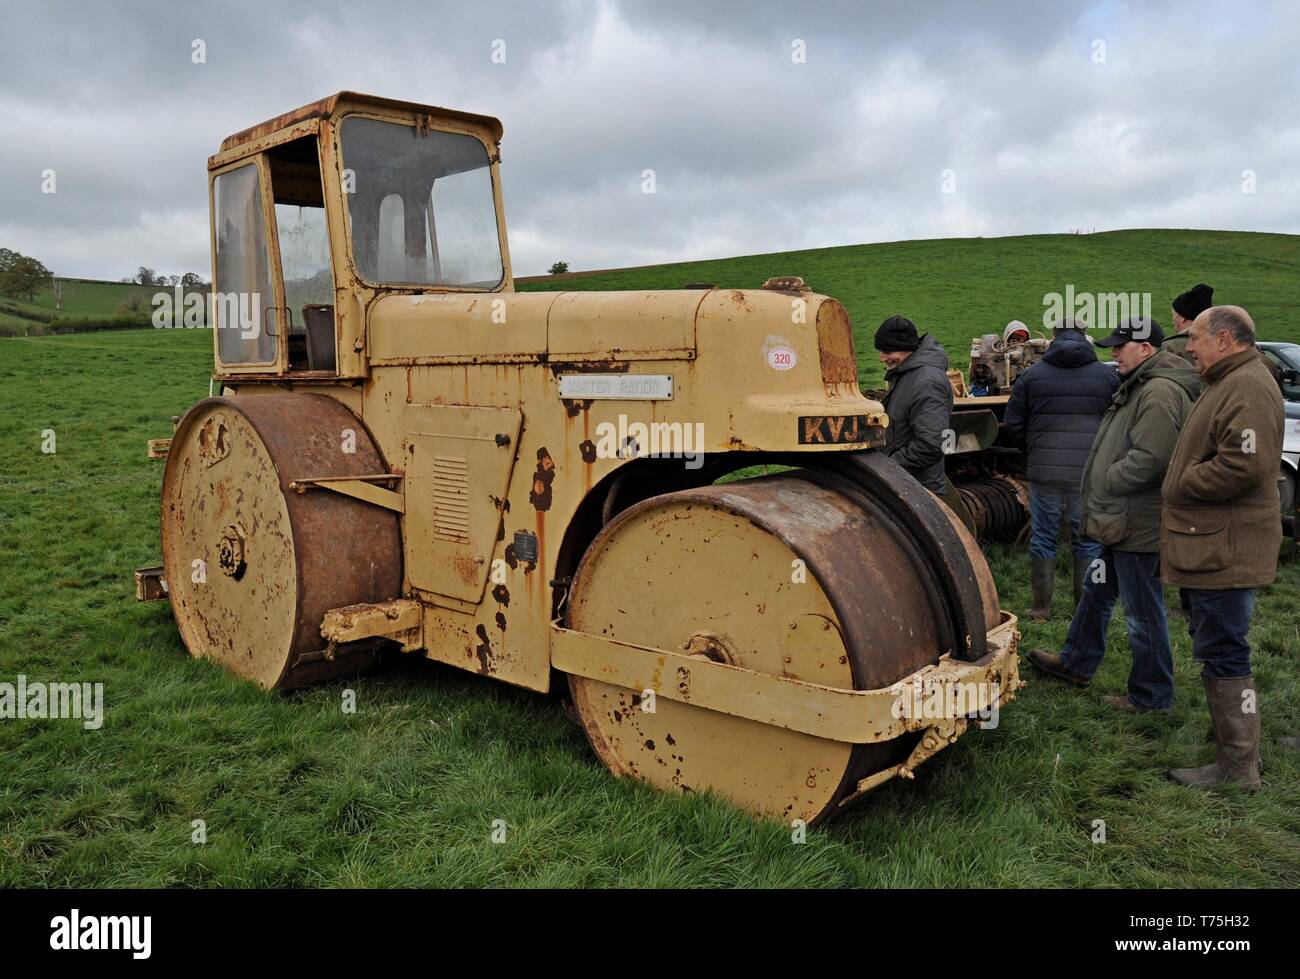 Vente ferme de vintage de machines agricoles, et des effets à la ferme de Venn, Herefordshire 27/4/19 Banque D'Images